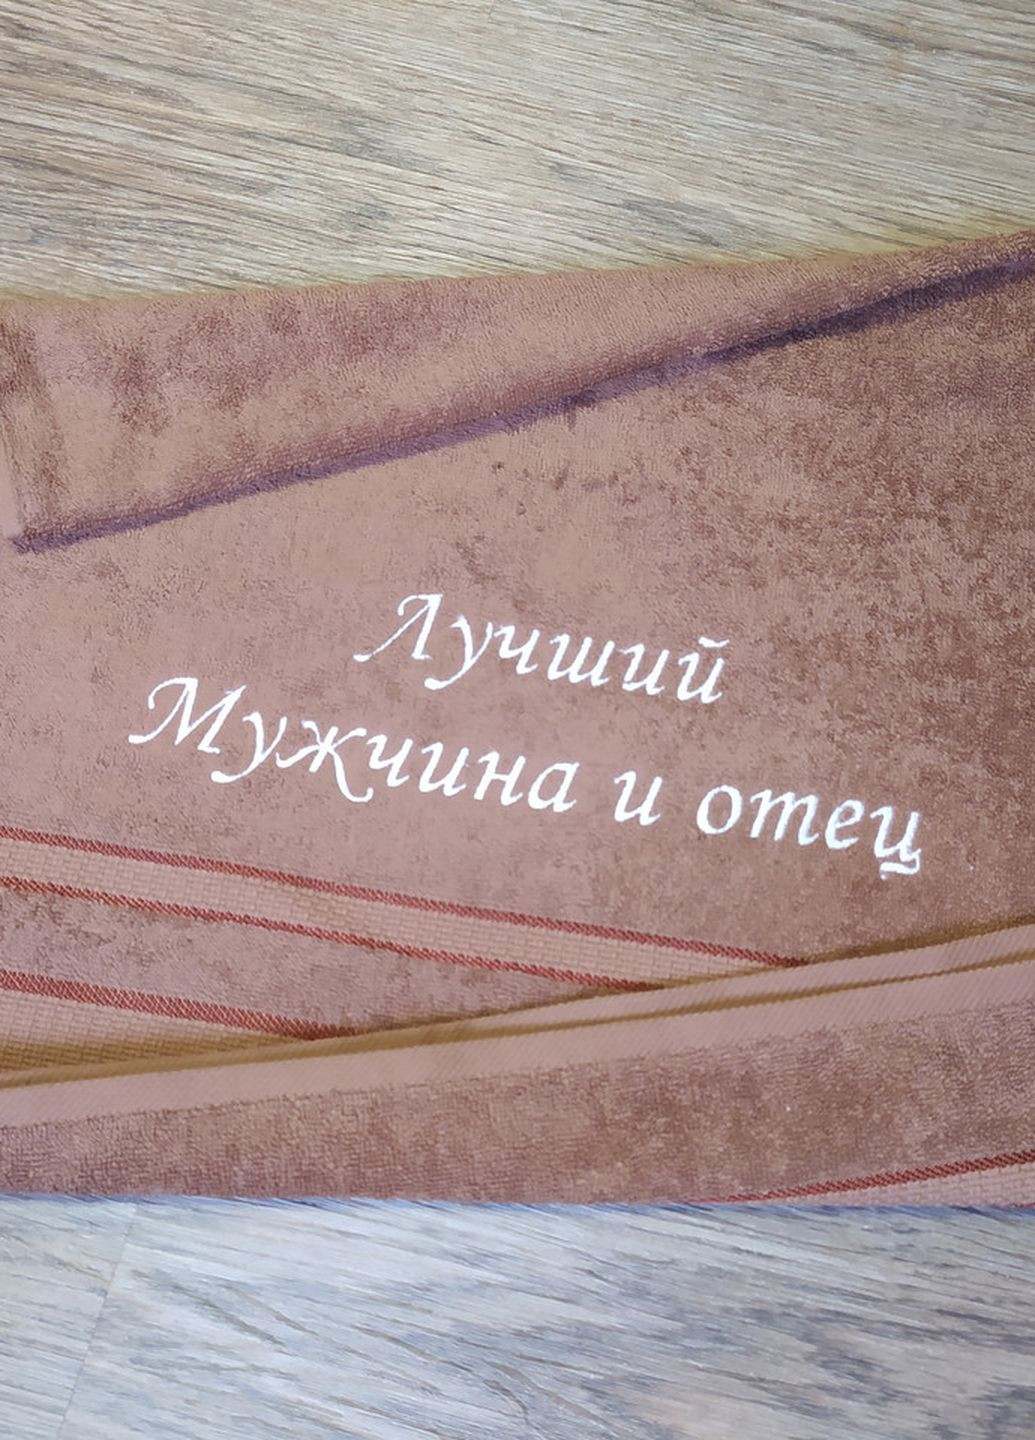 No Brand полотенце с вышивкой махровое лицевое 50*90 светло-коричневый мужу папе 00100 однотонный светло-коричневый производство - Украина